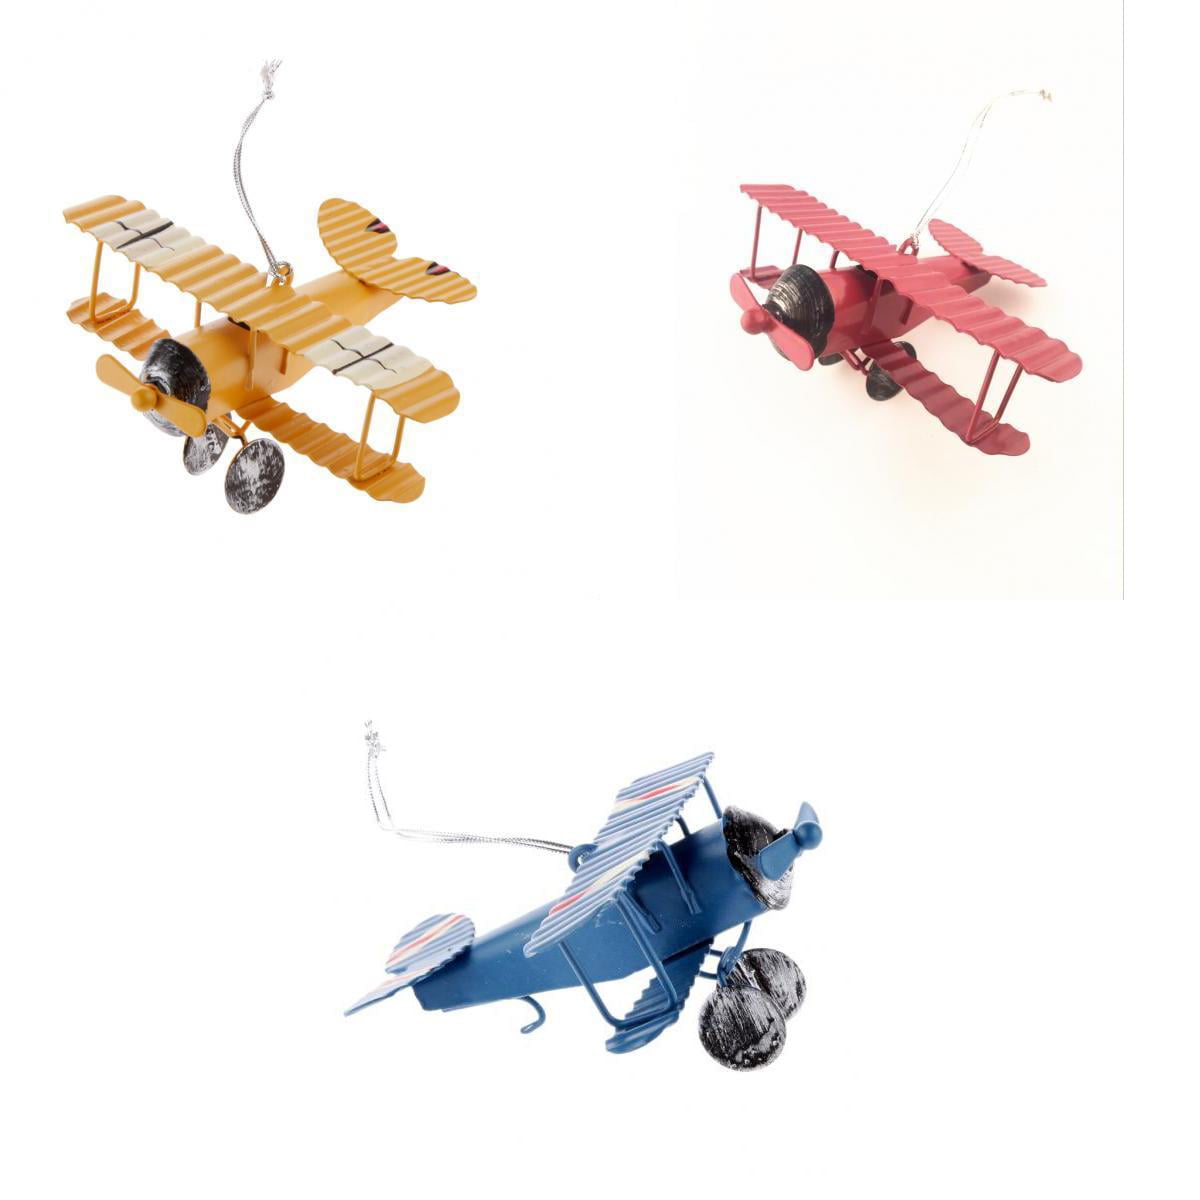 Orange STEM Biplane Airplane Toy Car Model Set Fun & Educational 